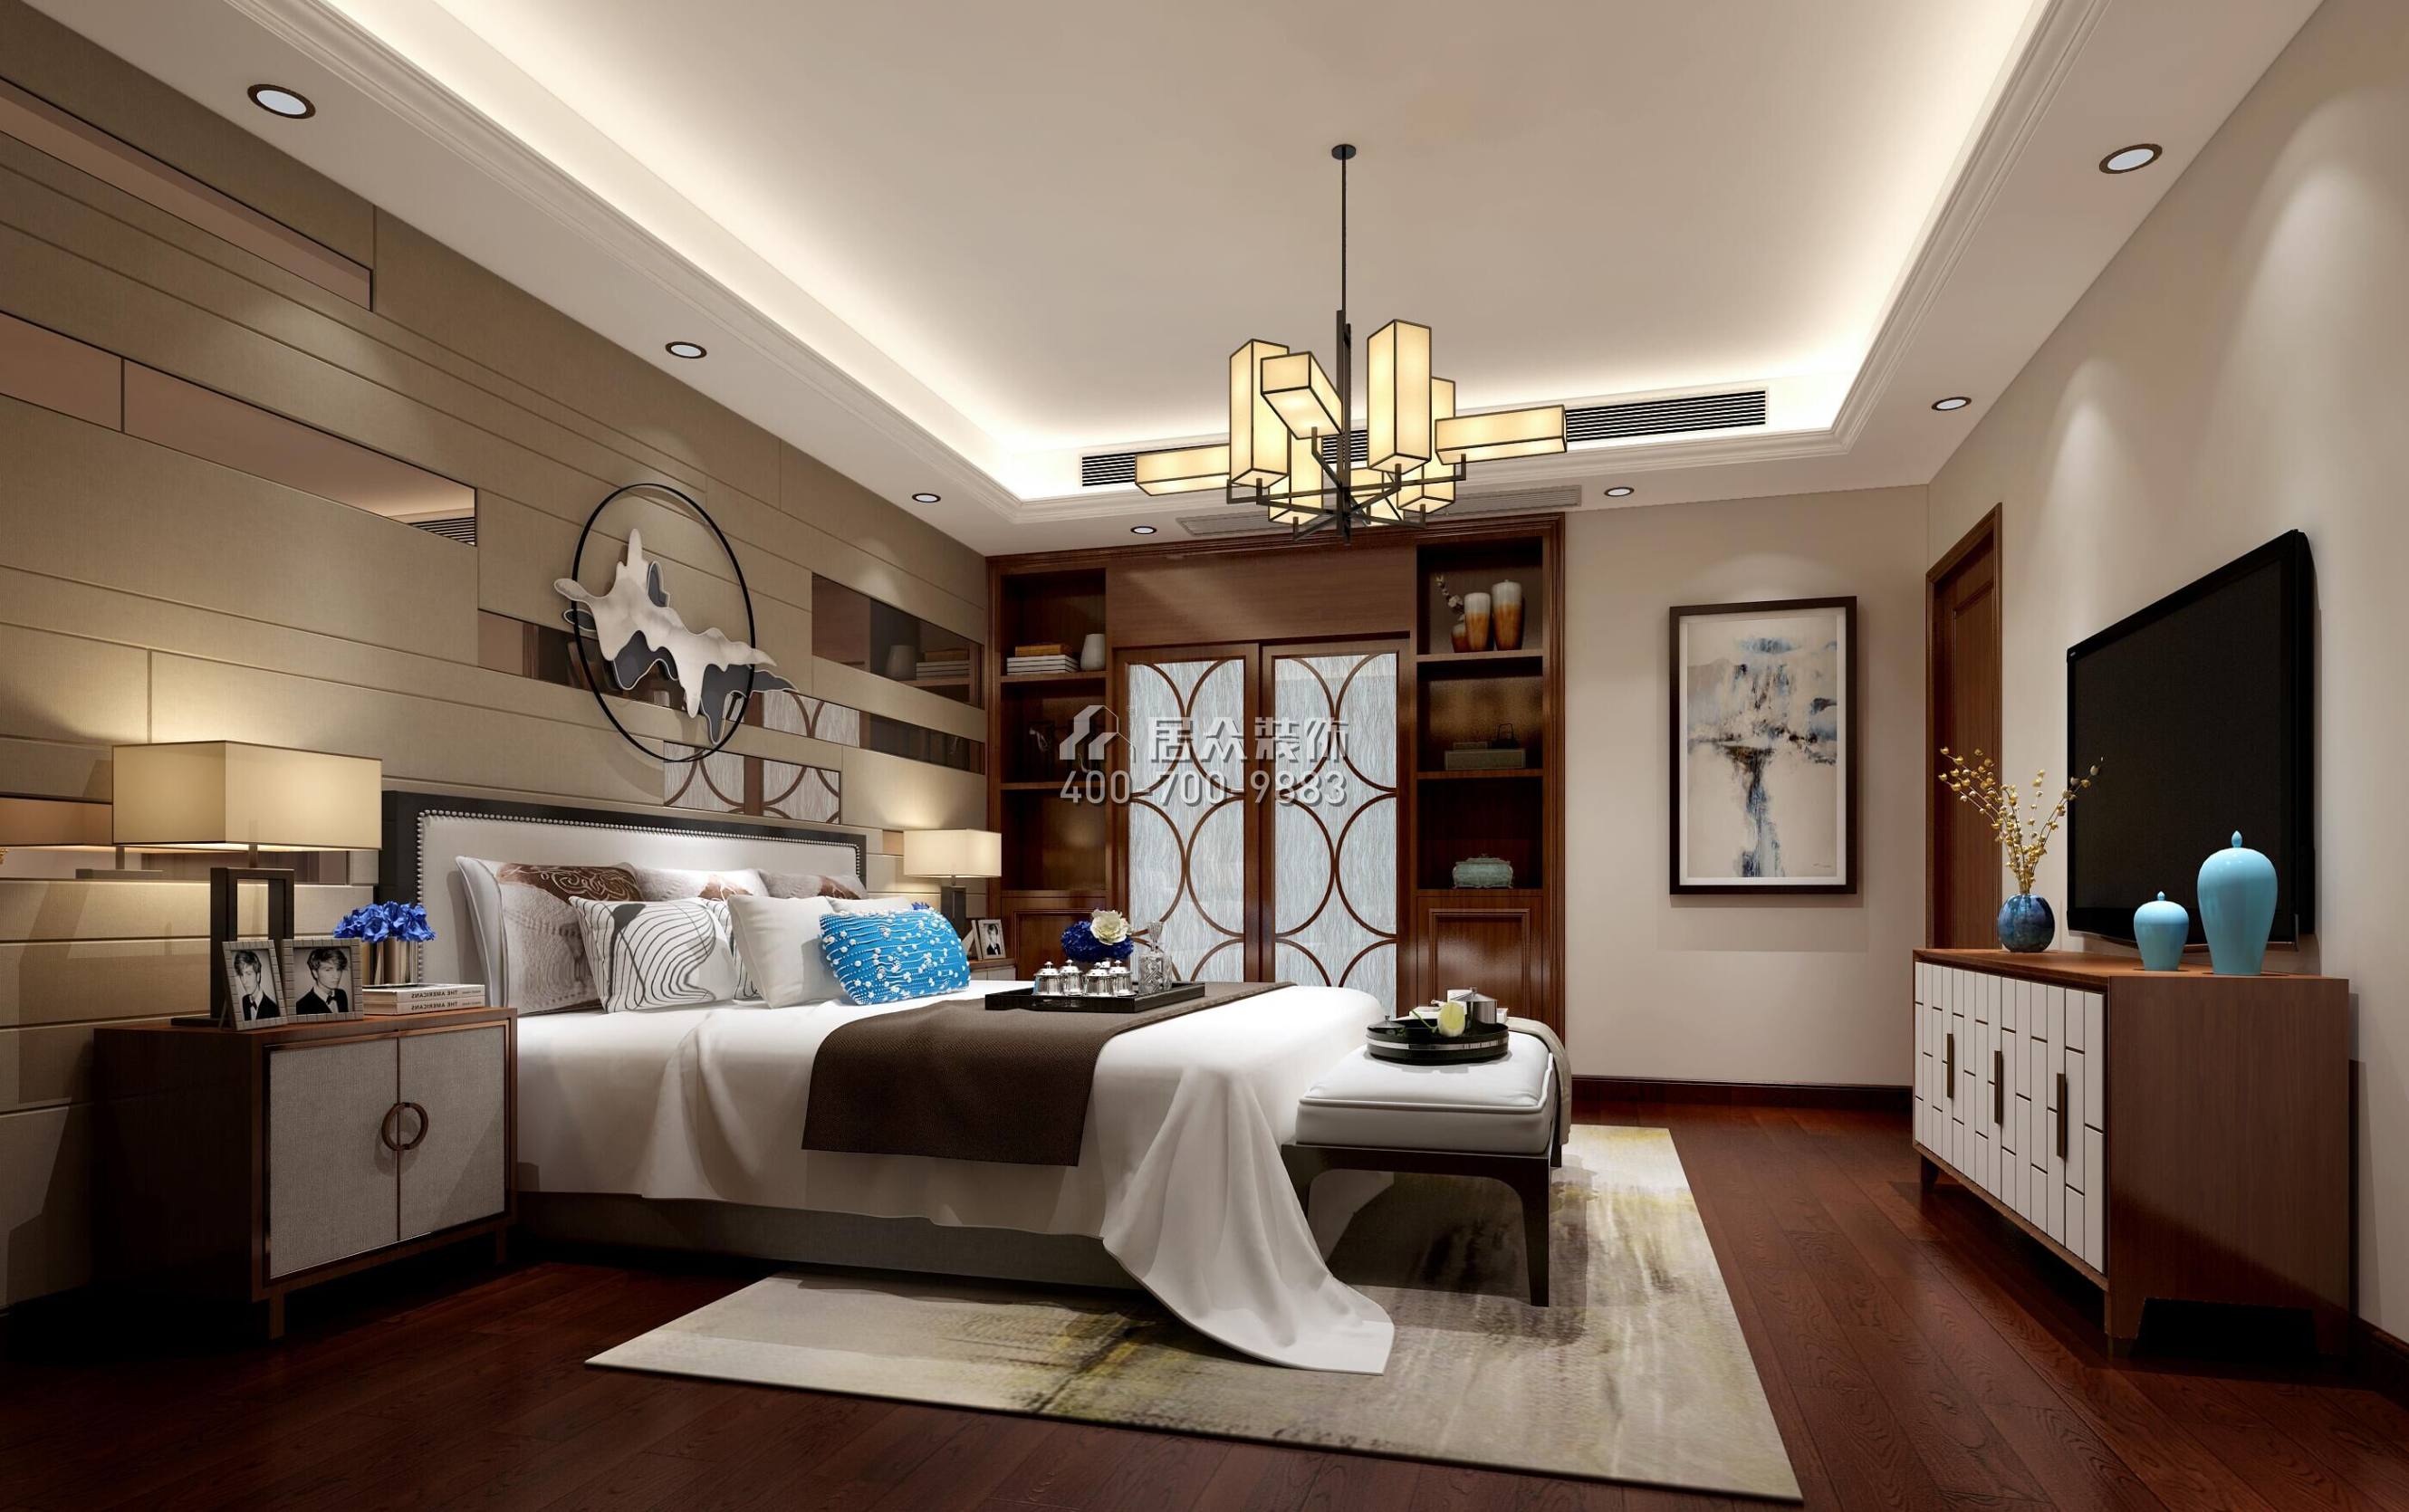 金地鹭湖1号208平方米中式风格复式户型卧室装修效果图